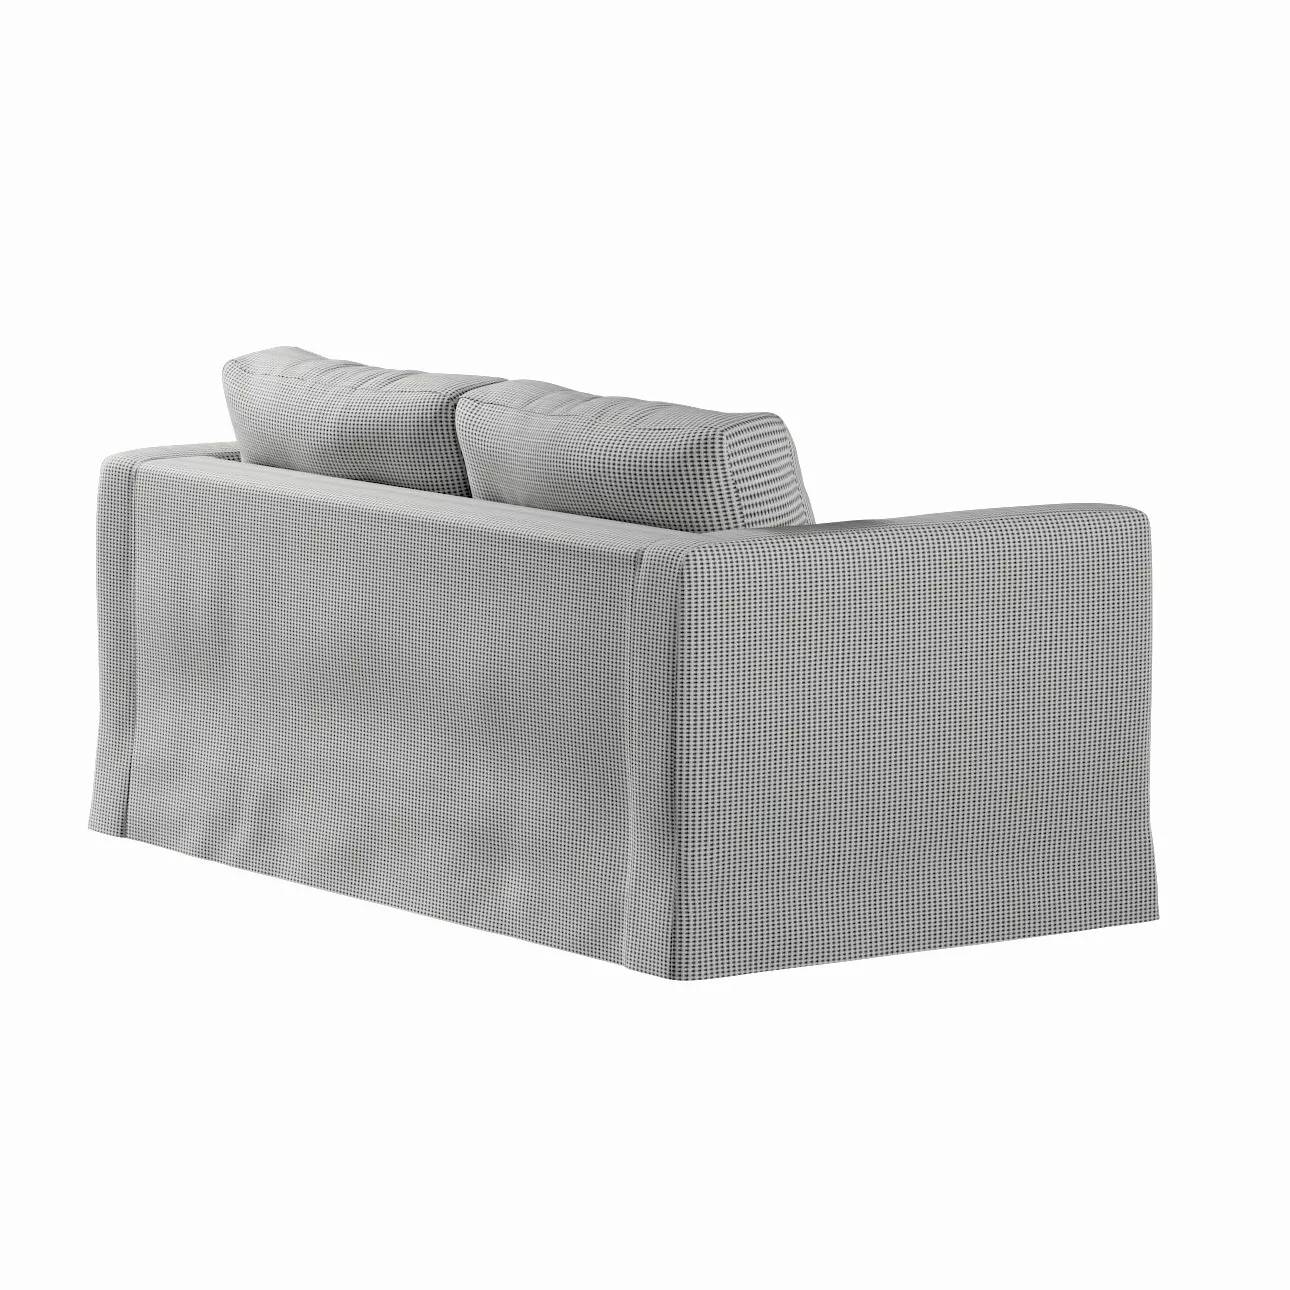 Bezug für Karlstad 2-Sitzer Sofa nicht ausklappbar, lang, schwarz-beige, So günstig online kaufen